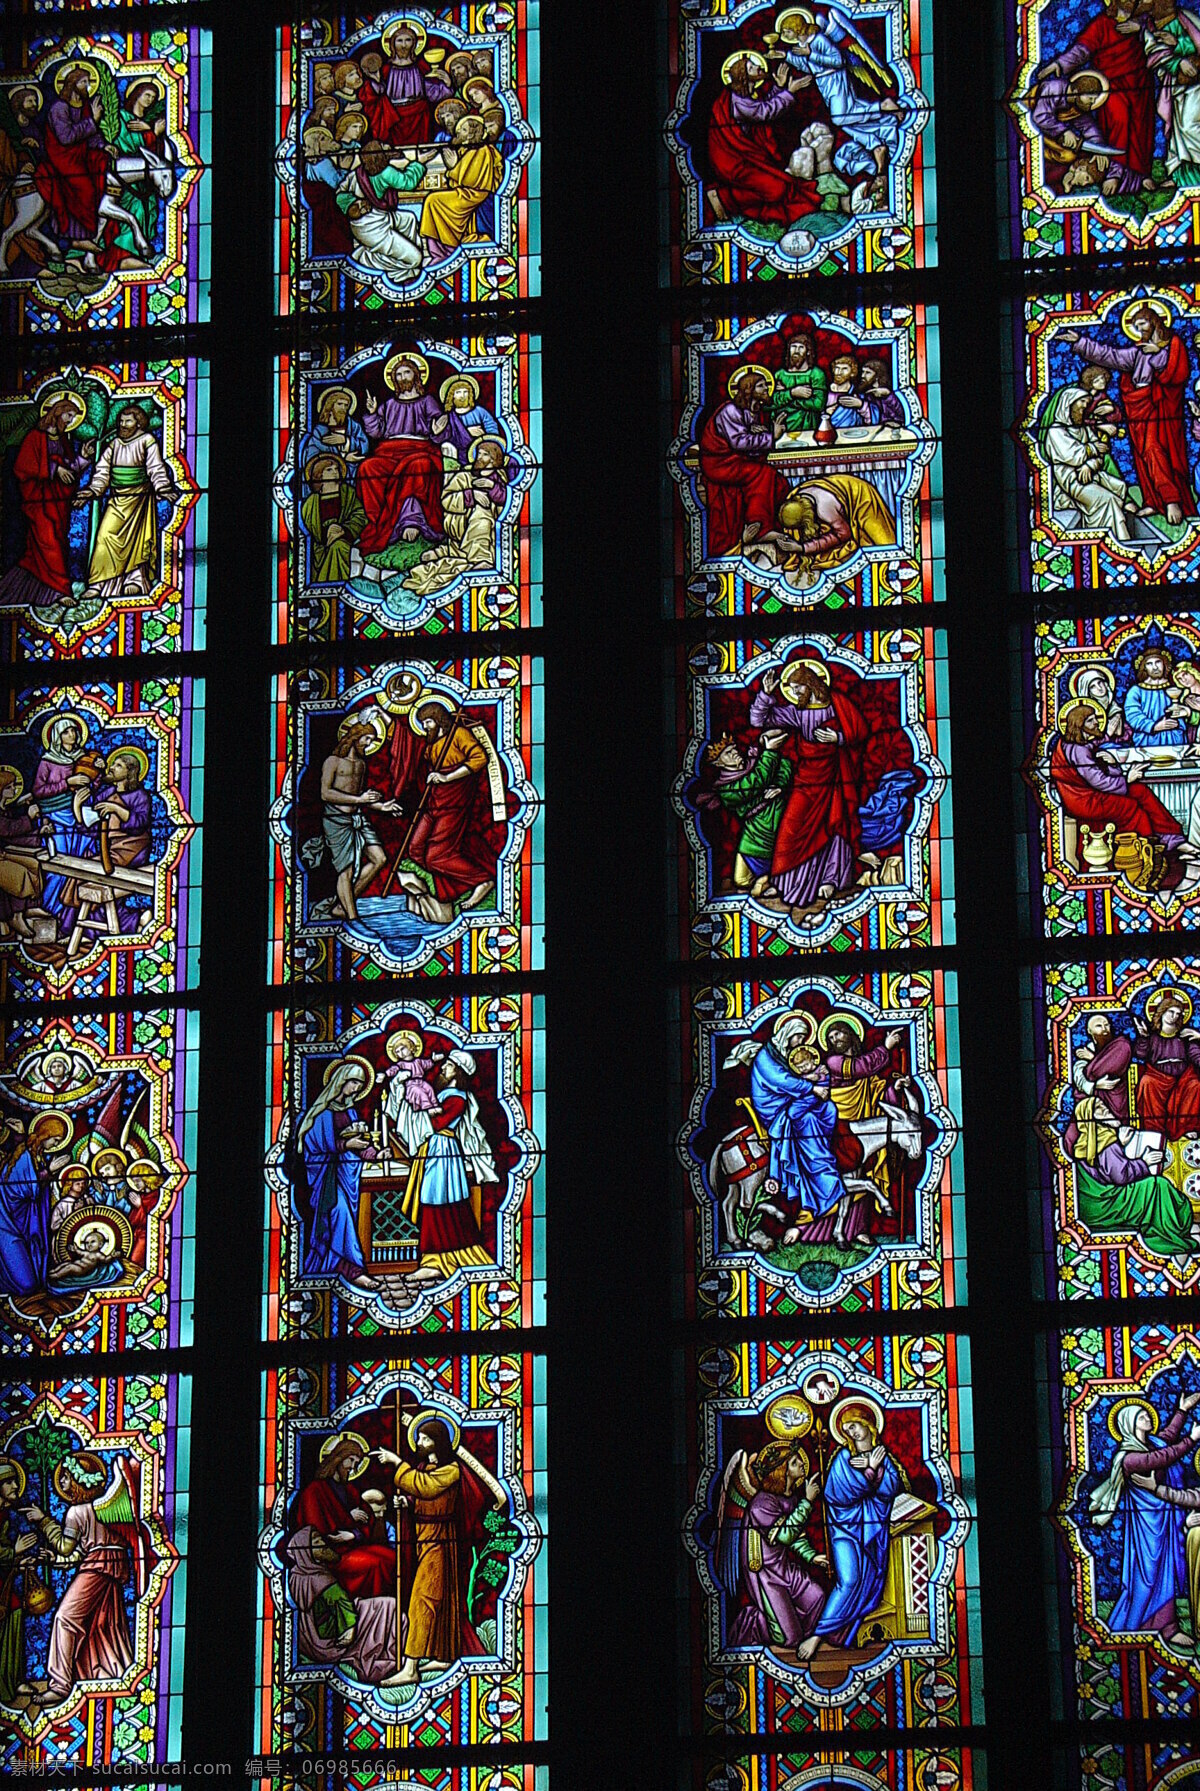 彩色玻璃 玻璃 科隆大教堂 教堂 科隆 德国 染色玻璃 宗教 建筑摄影 建筑园林